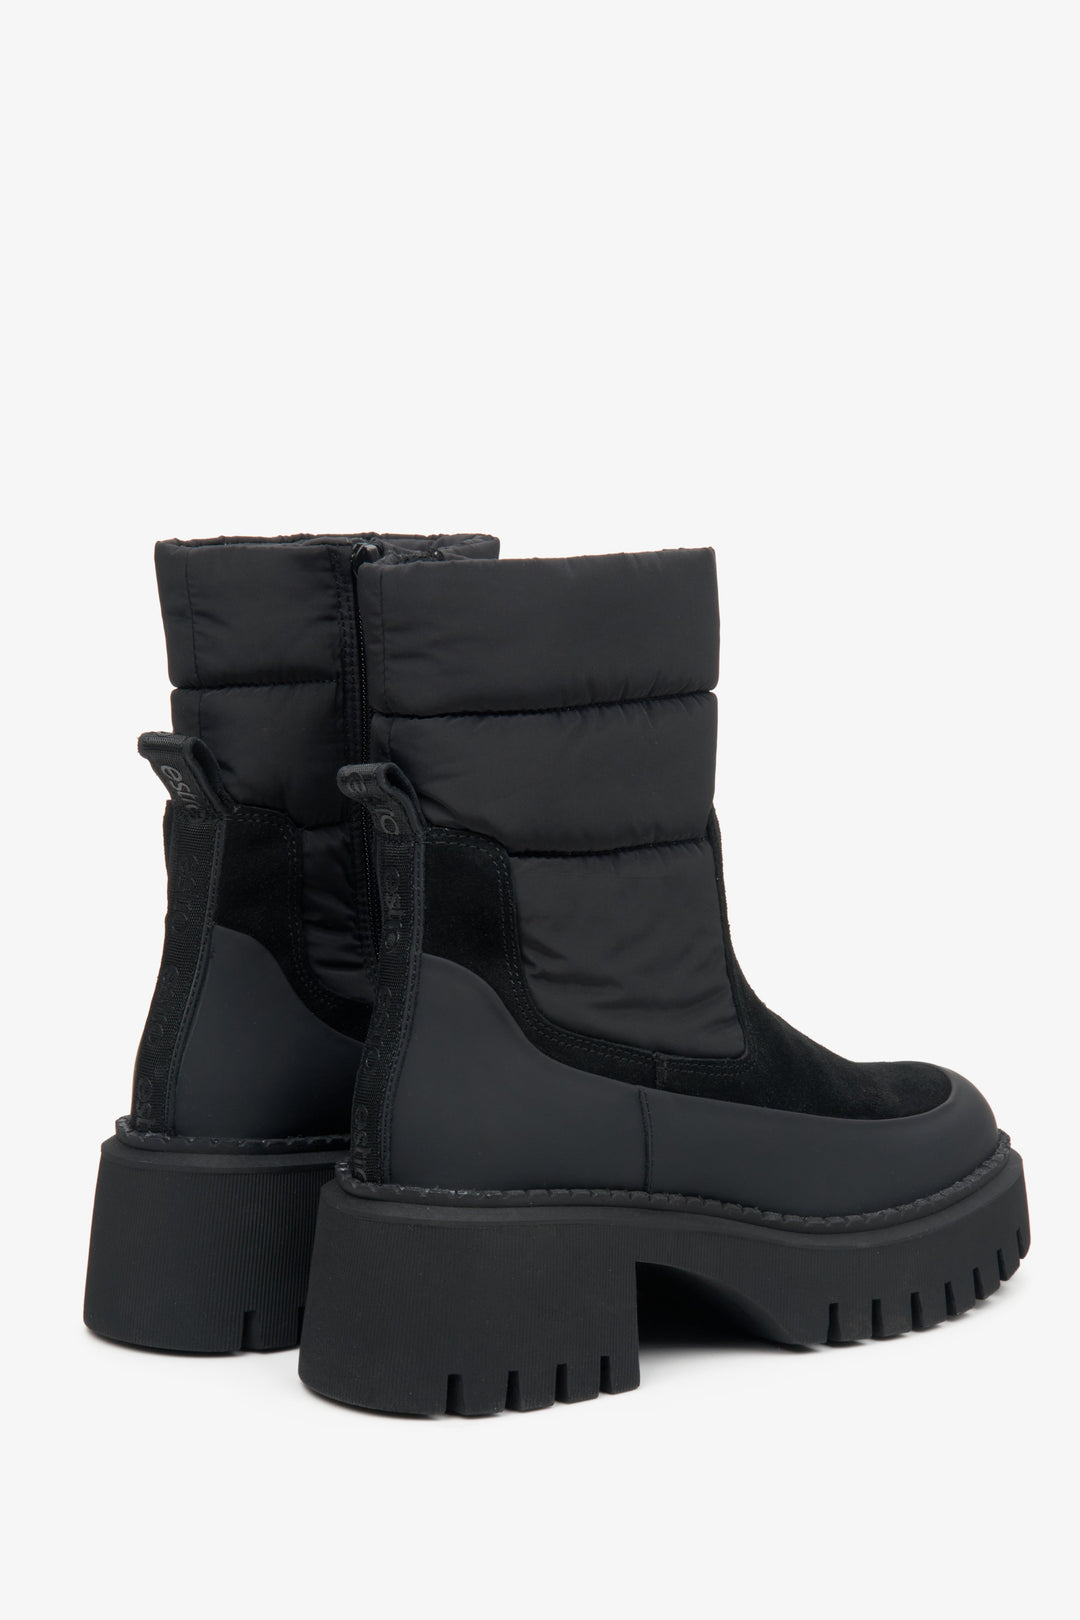 Czarne, ocieplane botki damskie na zimę marki Estro - zbliżenie na linię boczną i tył cholewy butów.